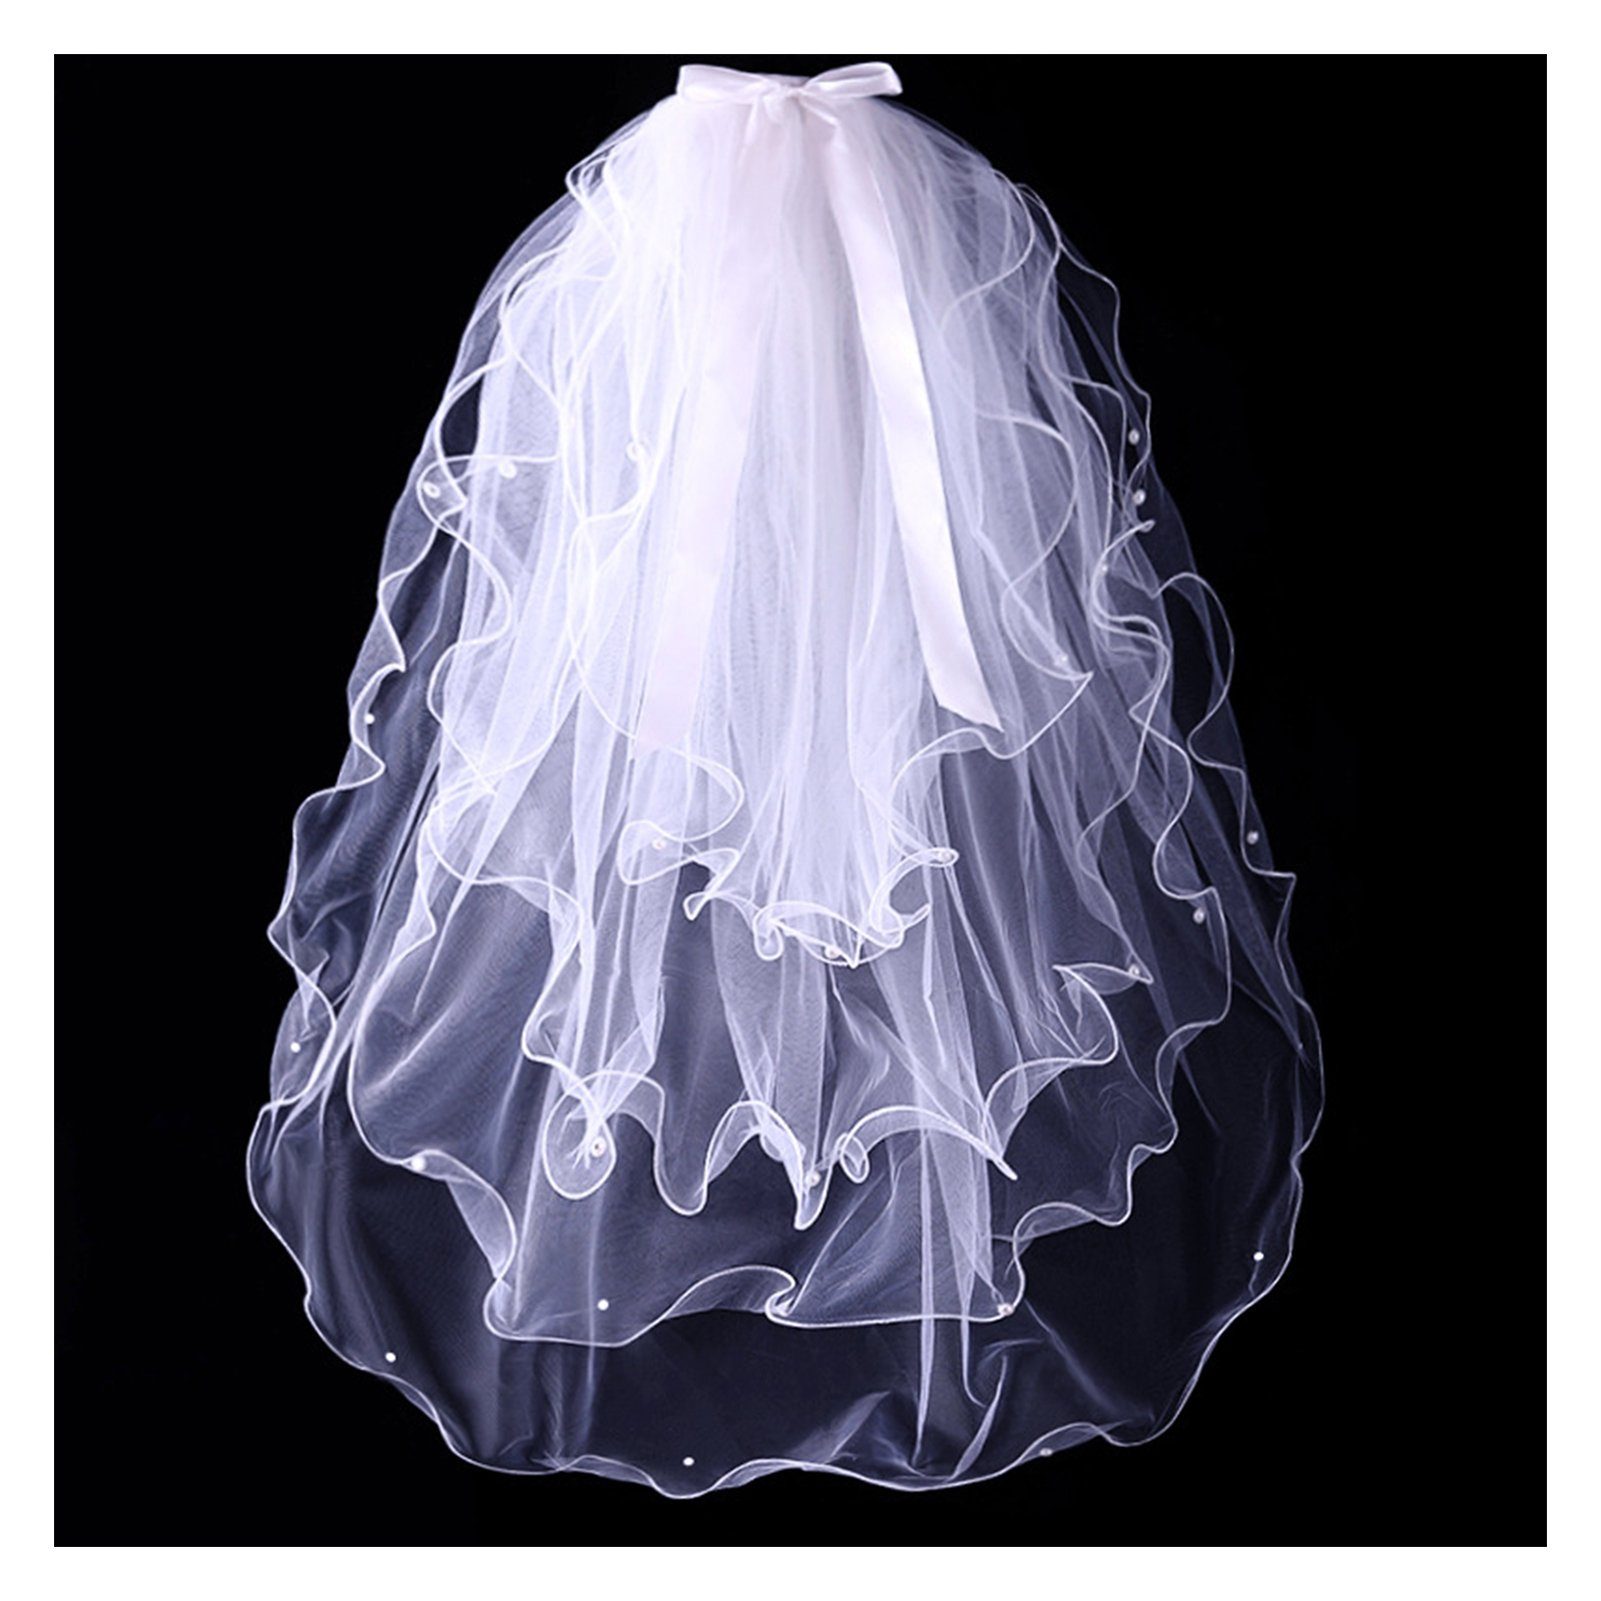 Für Perlen-Kurzschleier, Damen, B Blusmart Schleier Brautschleier Einfacher white Hochzeitsschleier 4-stufiger